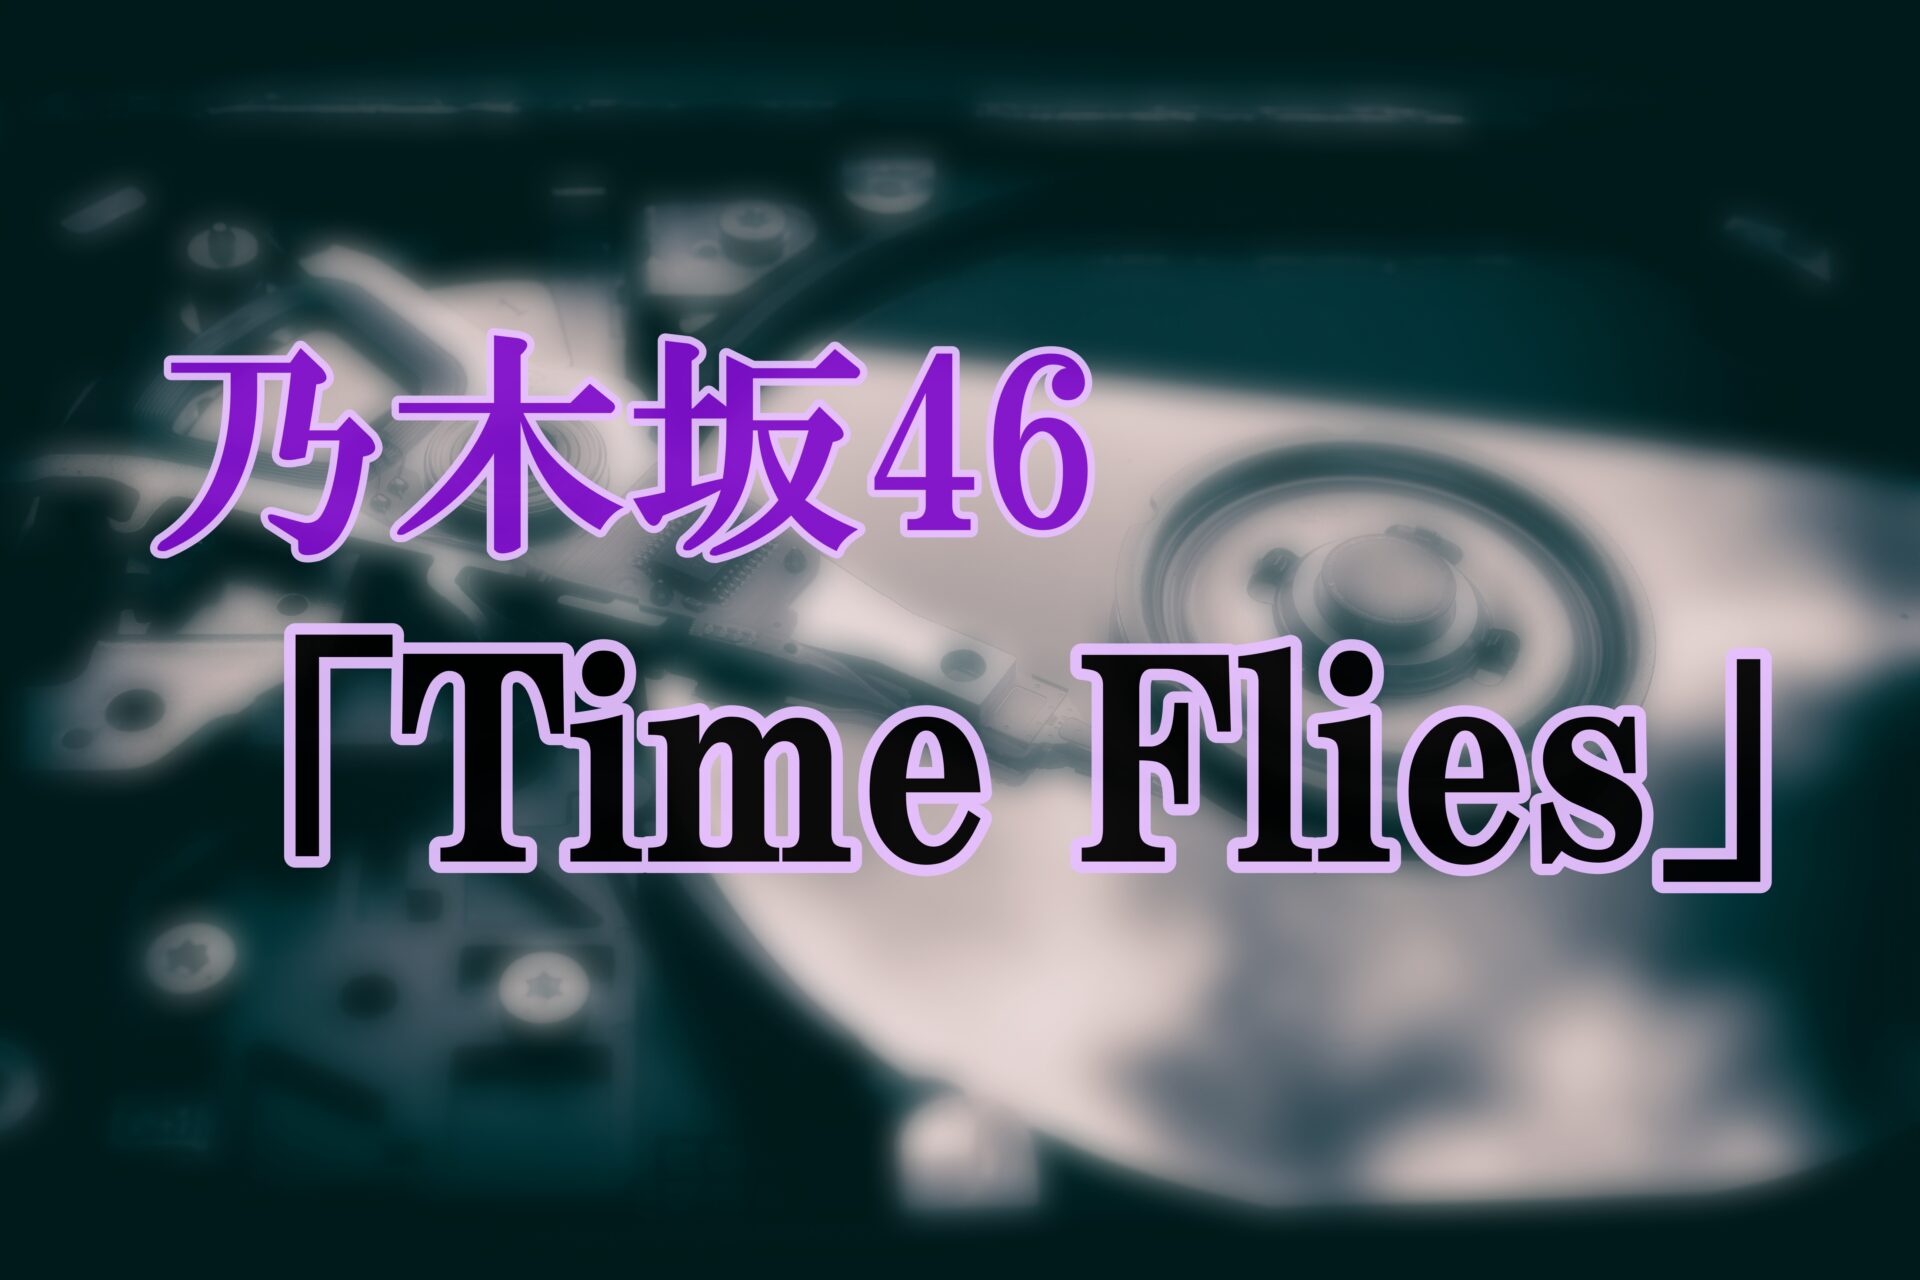 乃木坂46「Time Flies」サムネイル